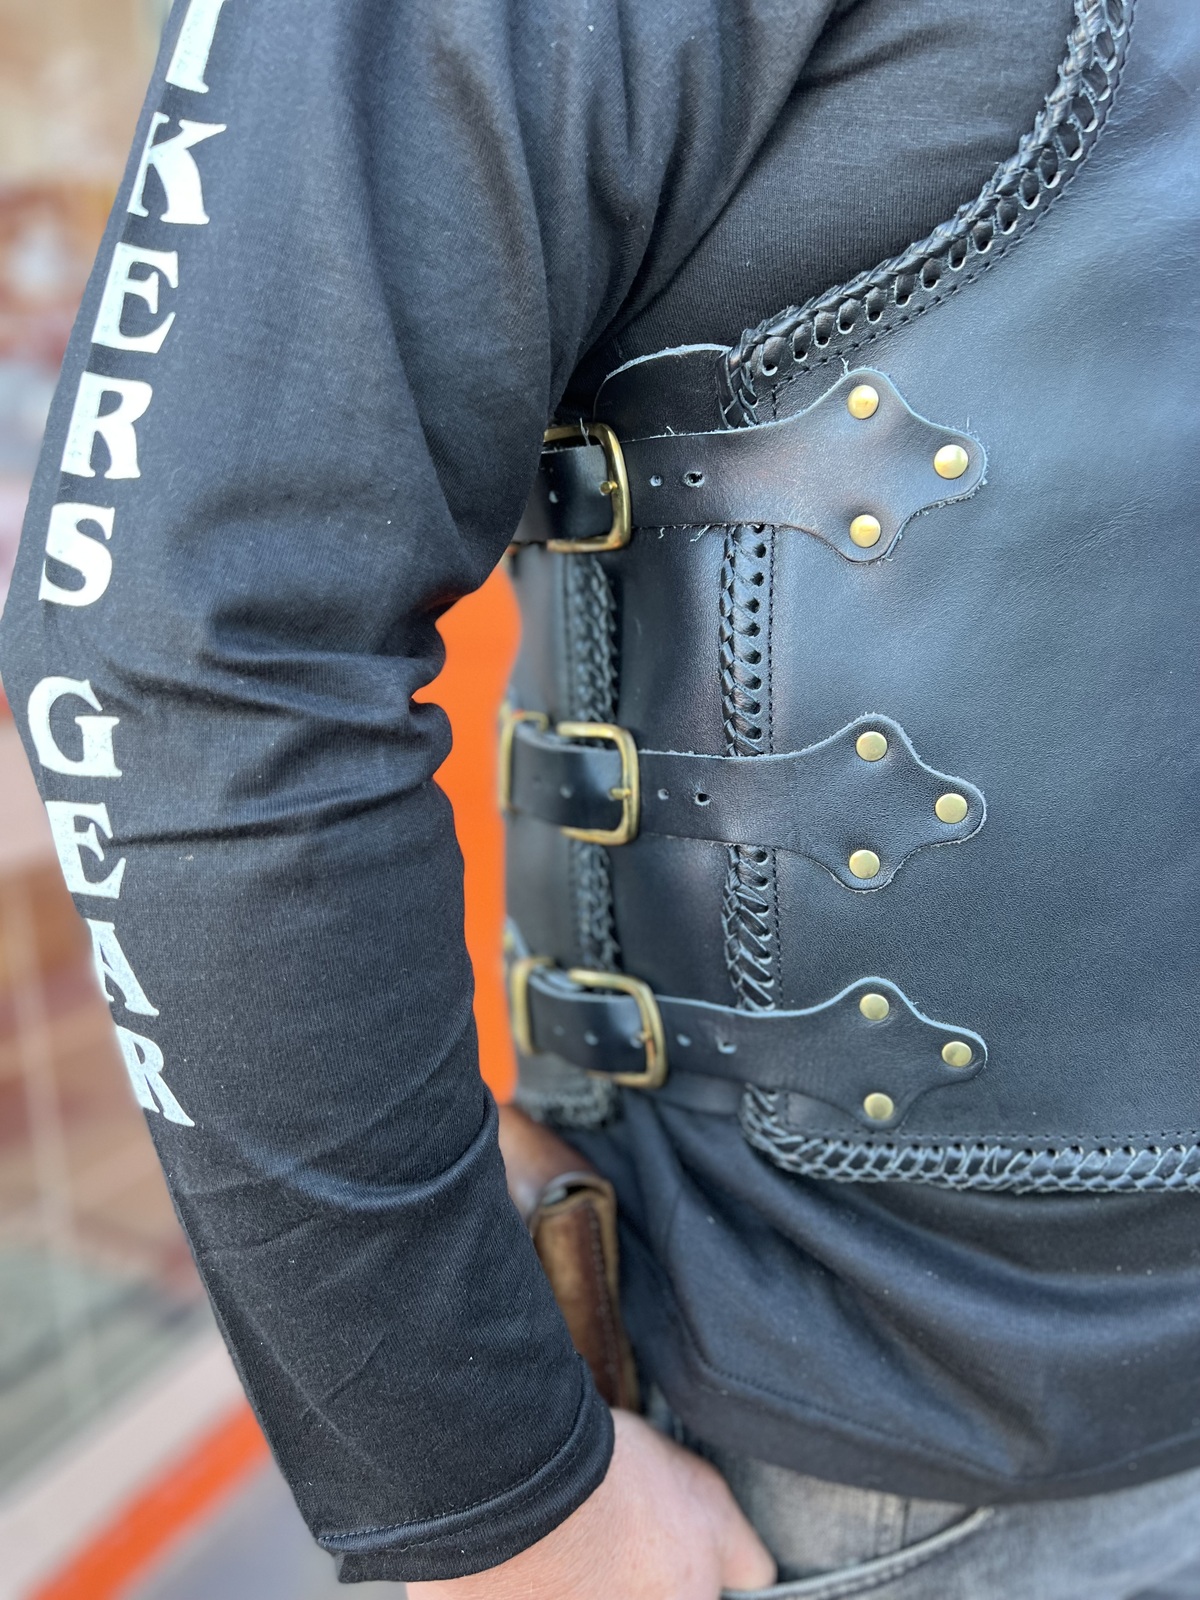 Leather Vest Men's Hunt Club Brown Wax Black Paisley Leather Build Denim  Style Rider Motorcycle Leather Vest Men Vest 